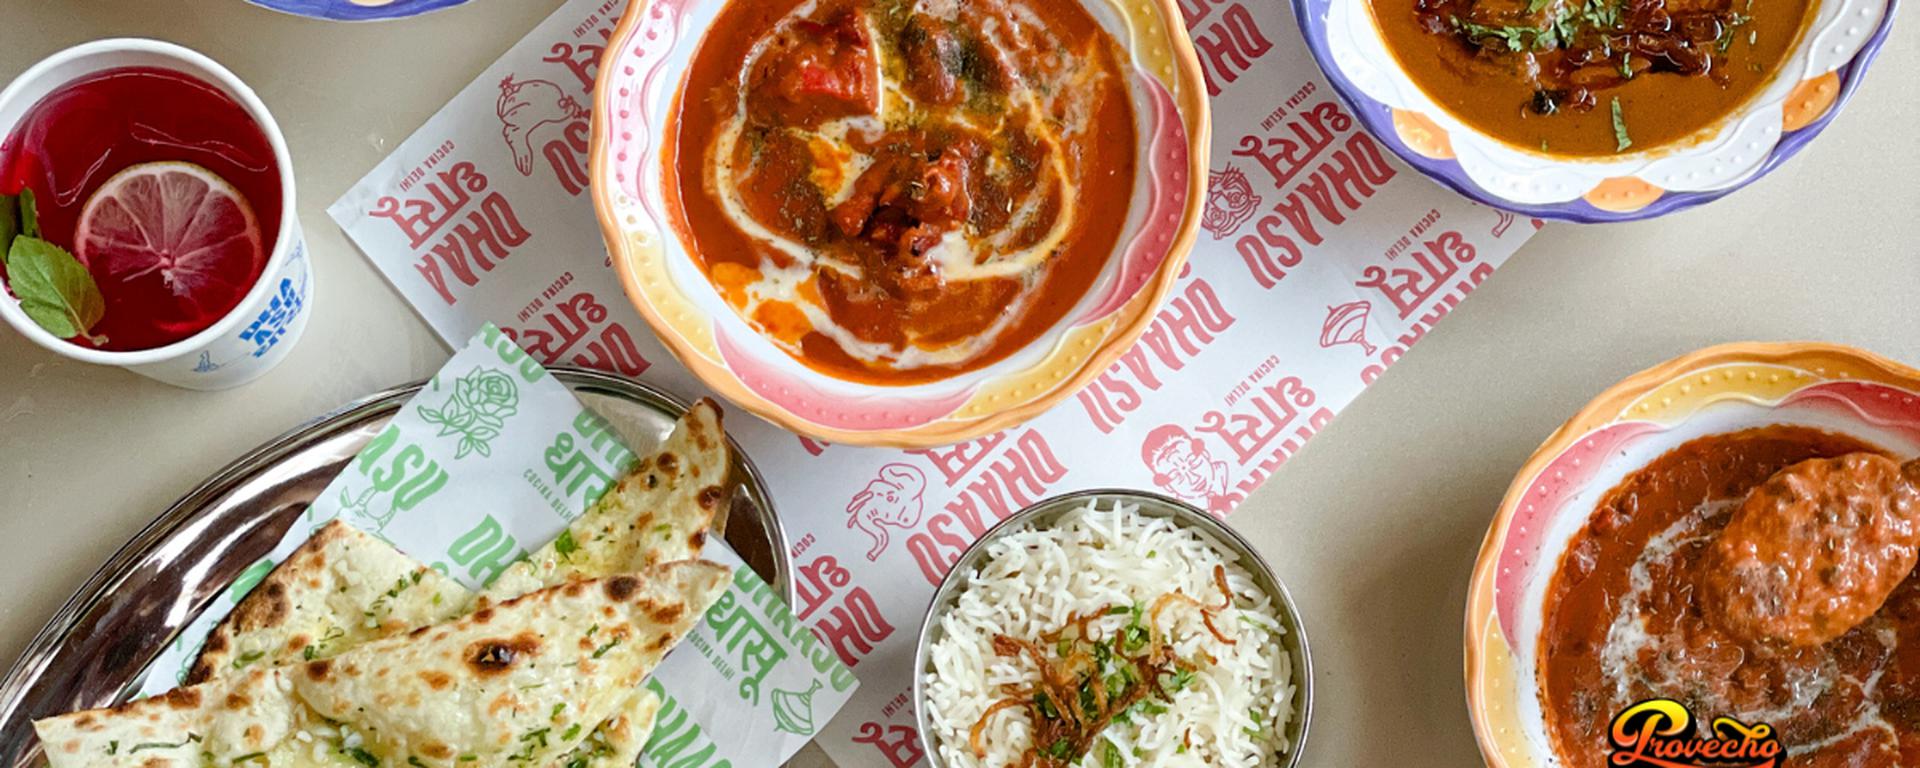 ¿La mejor comida india de Lima? Así es la propuesta de Dhaasu en su nuevo local en la Av. La Mar